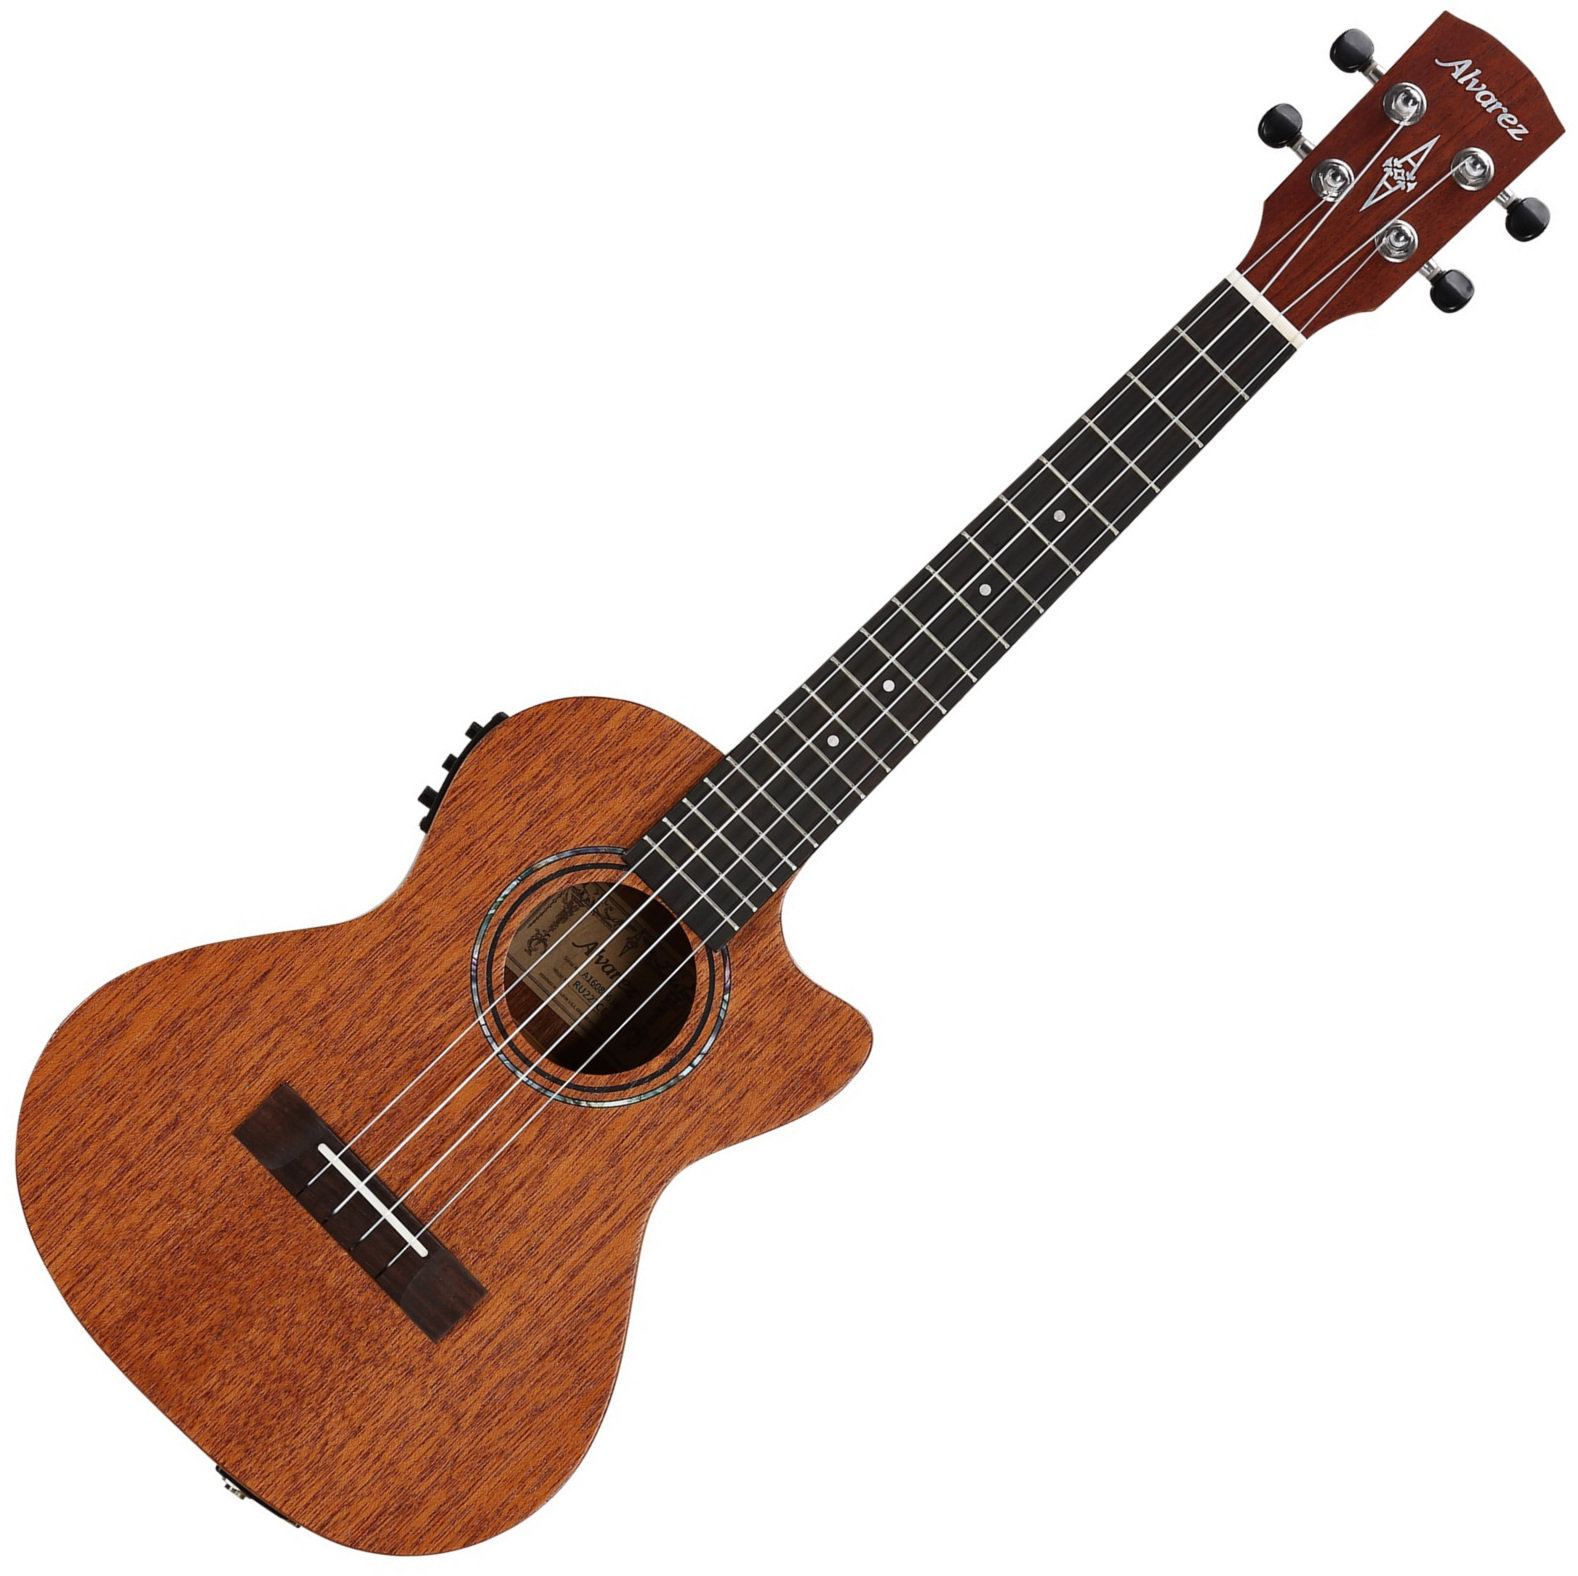 Tenori-ukulele Alvarez RU22TCE Tenori-ukulele Natural